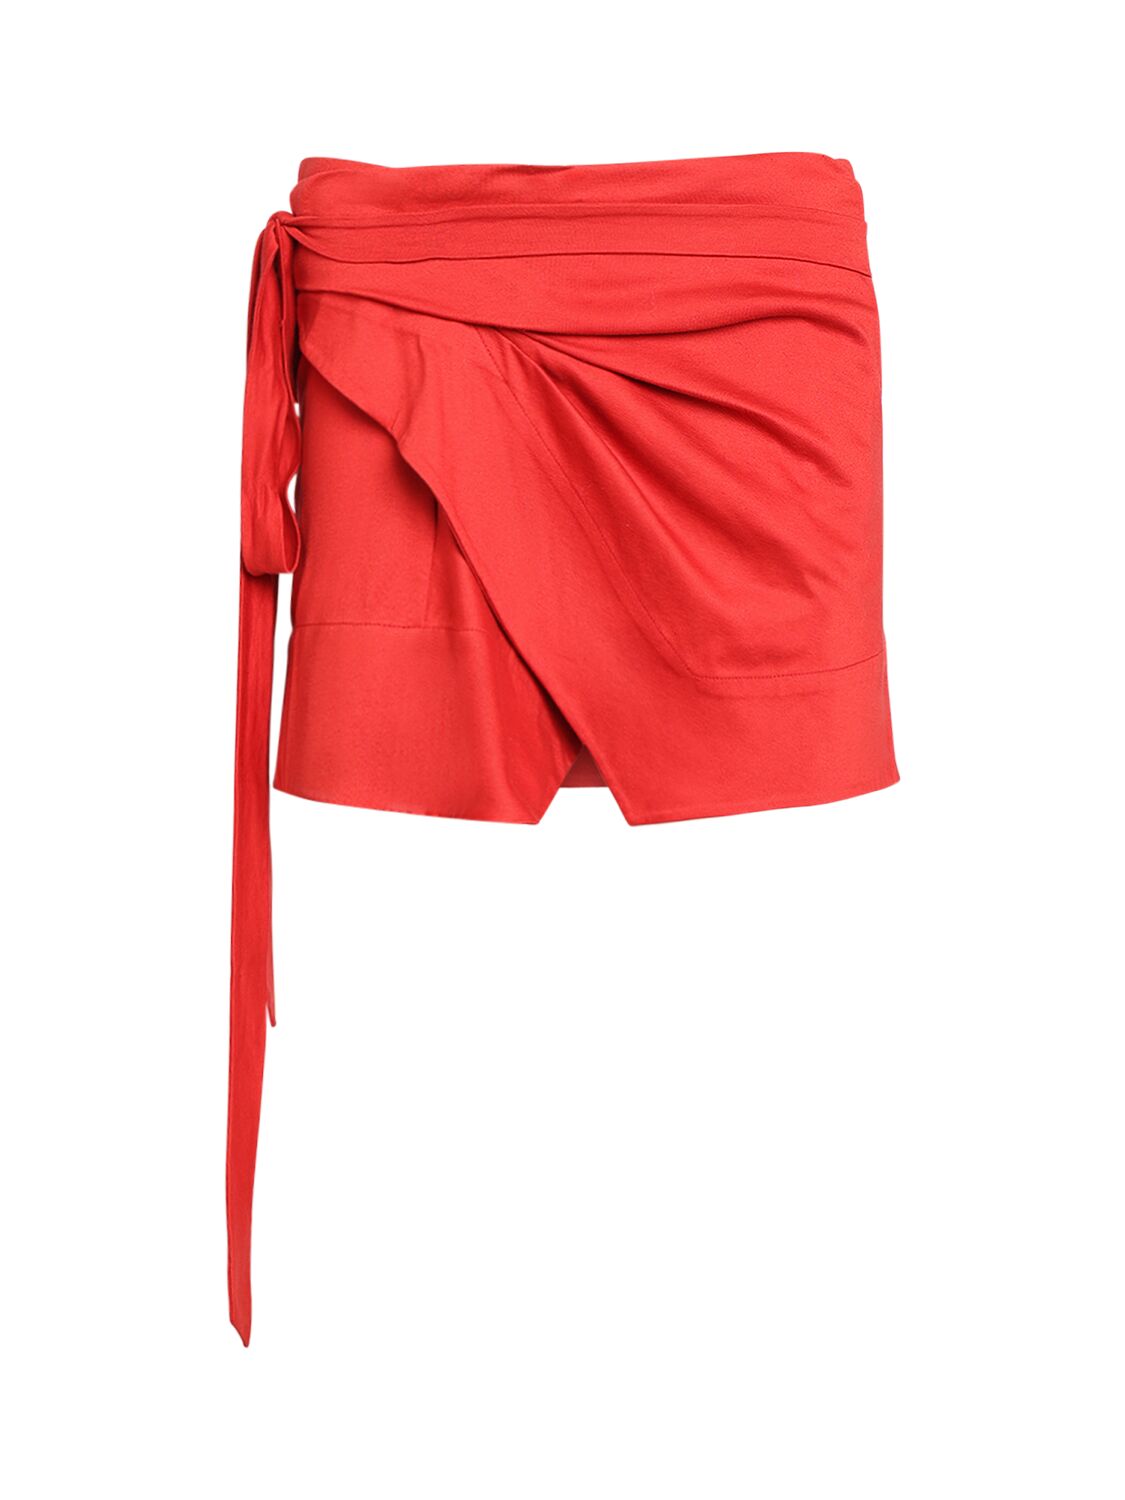 Image of Berenice Cotton Mini Skirt